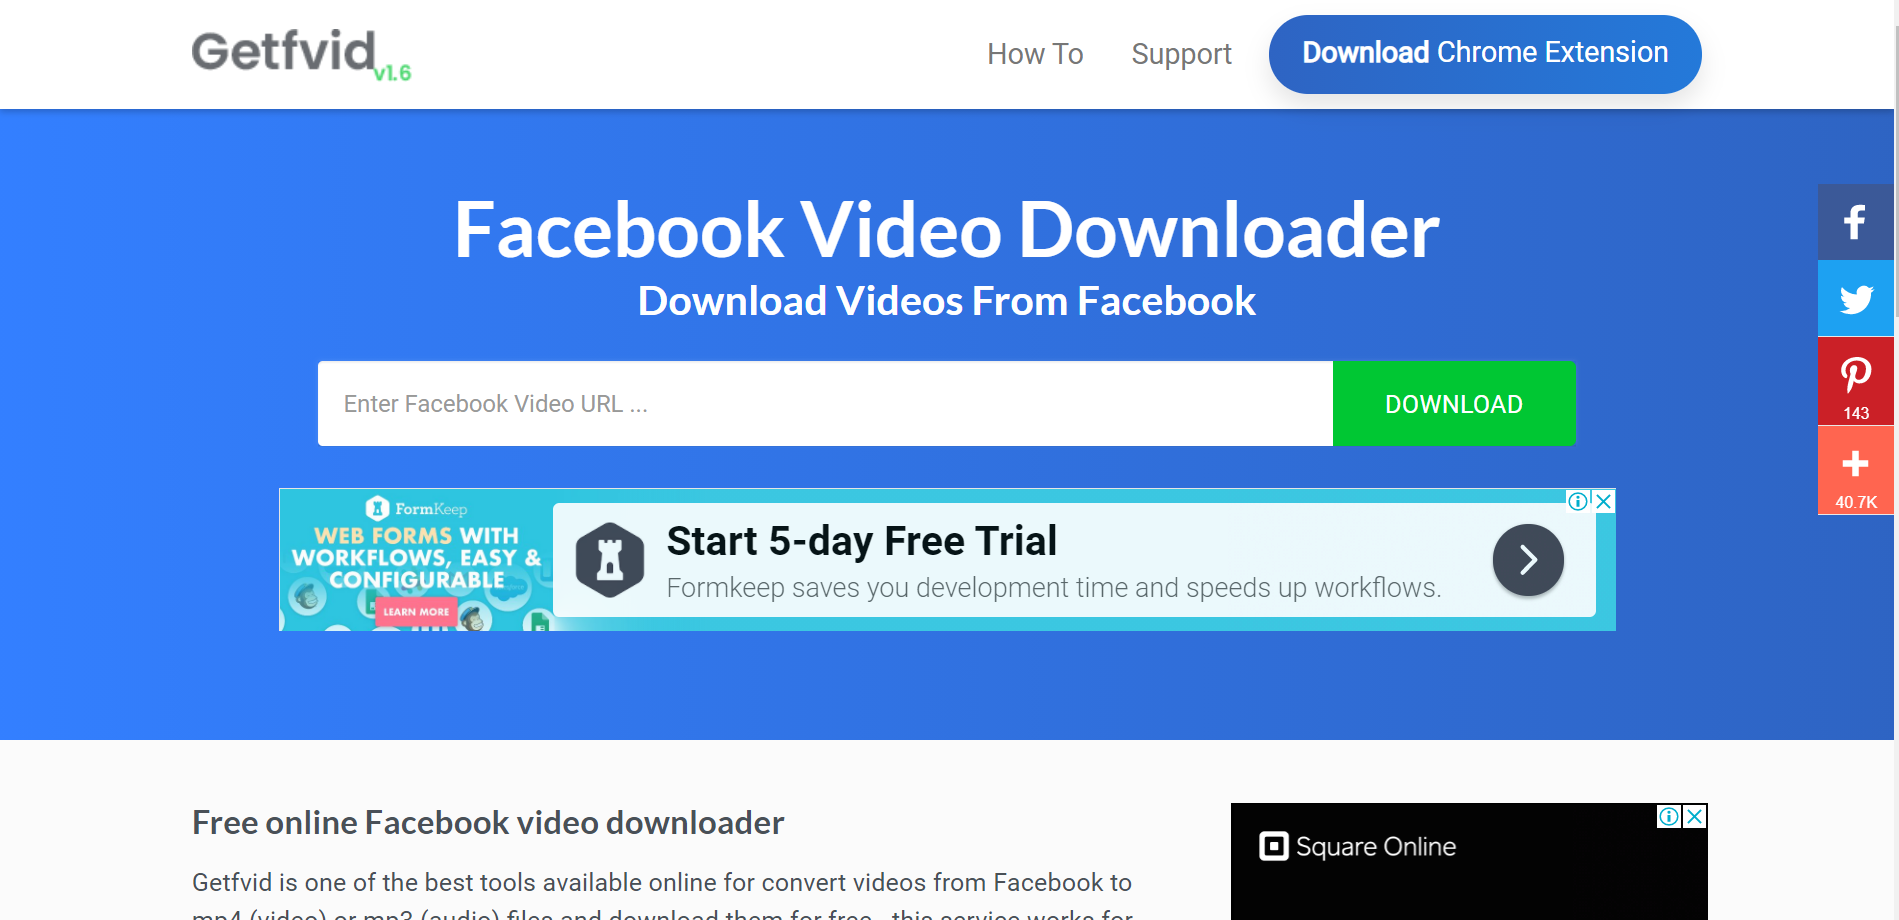 Facebook Video Downloader 6.17.6 free instal